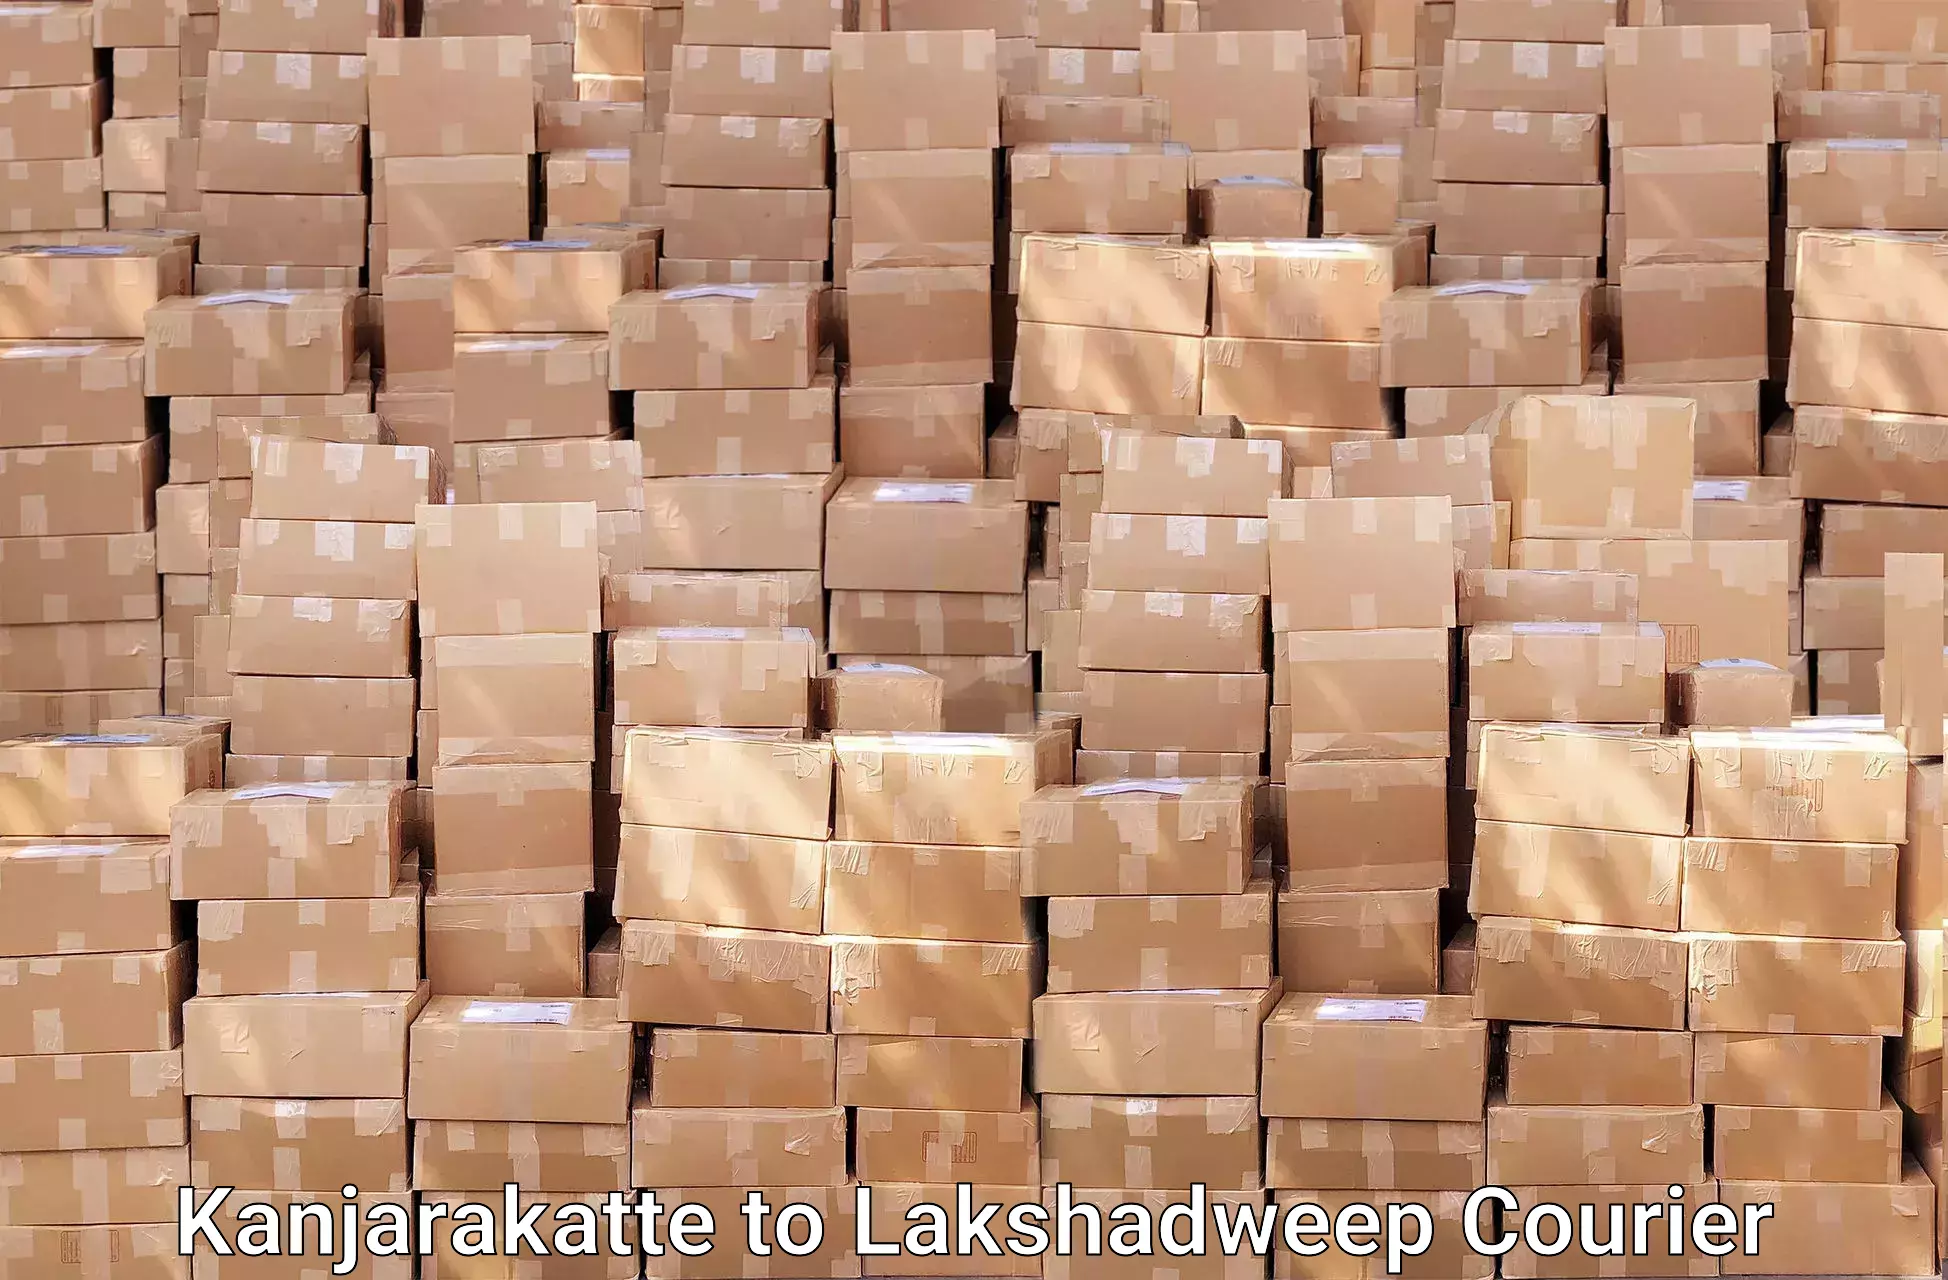 Residential furniture transport in Kanjarakatte to Lakshadweep